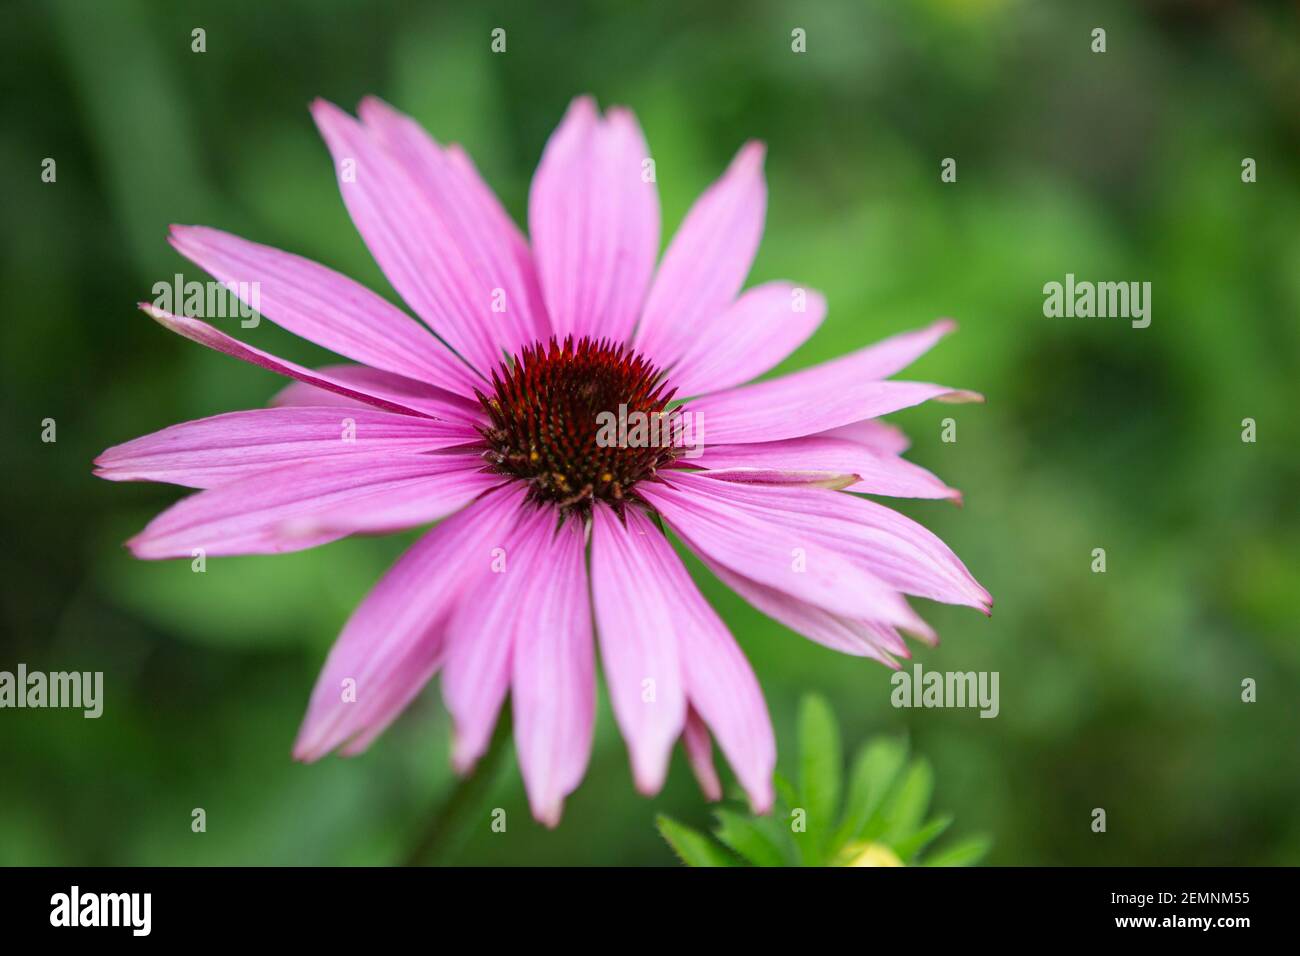 Echinacea Purpura flower Stock Photo